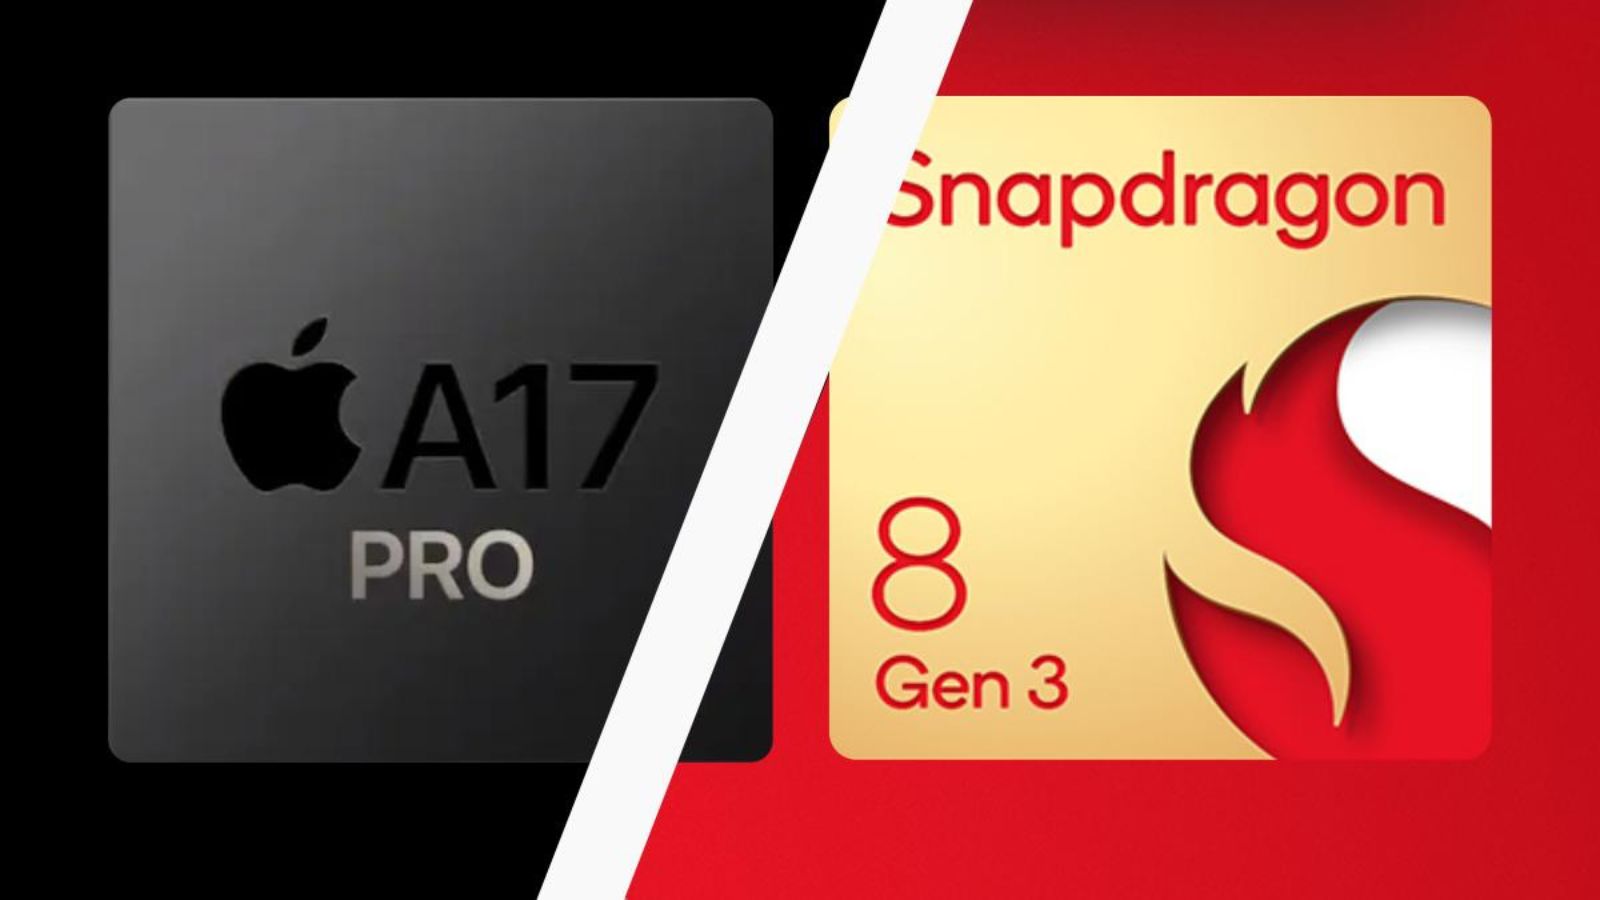 Apple A17 Pro vs Snapdragon 8 Gen 3, la sfida sull'EFFICIENZA